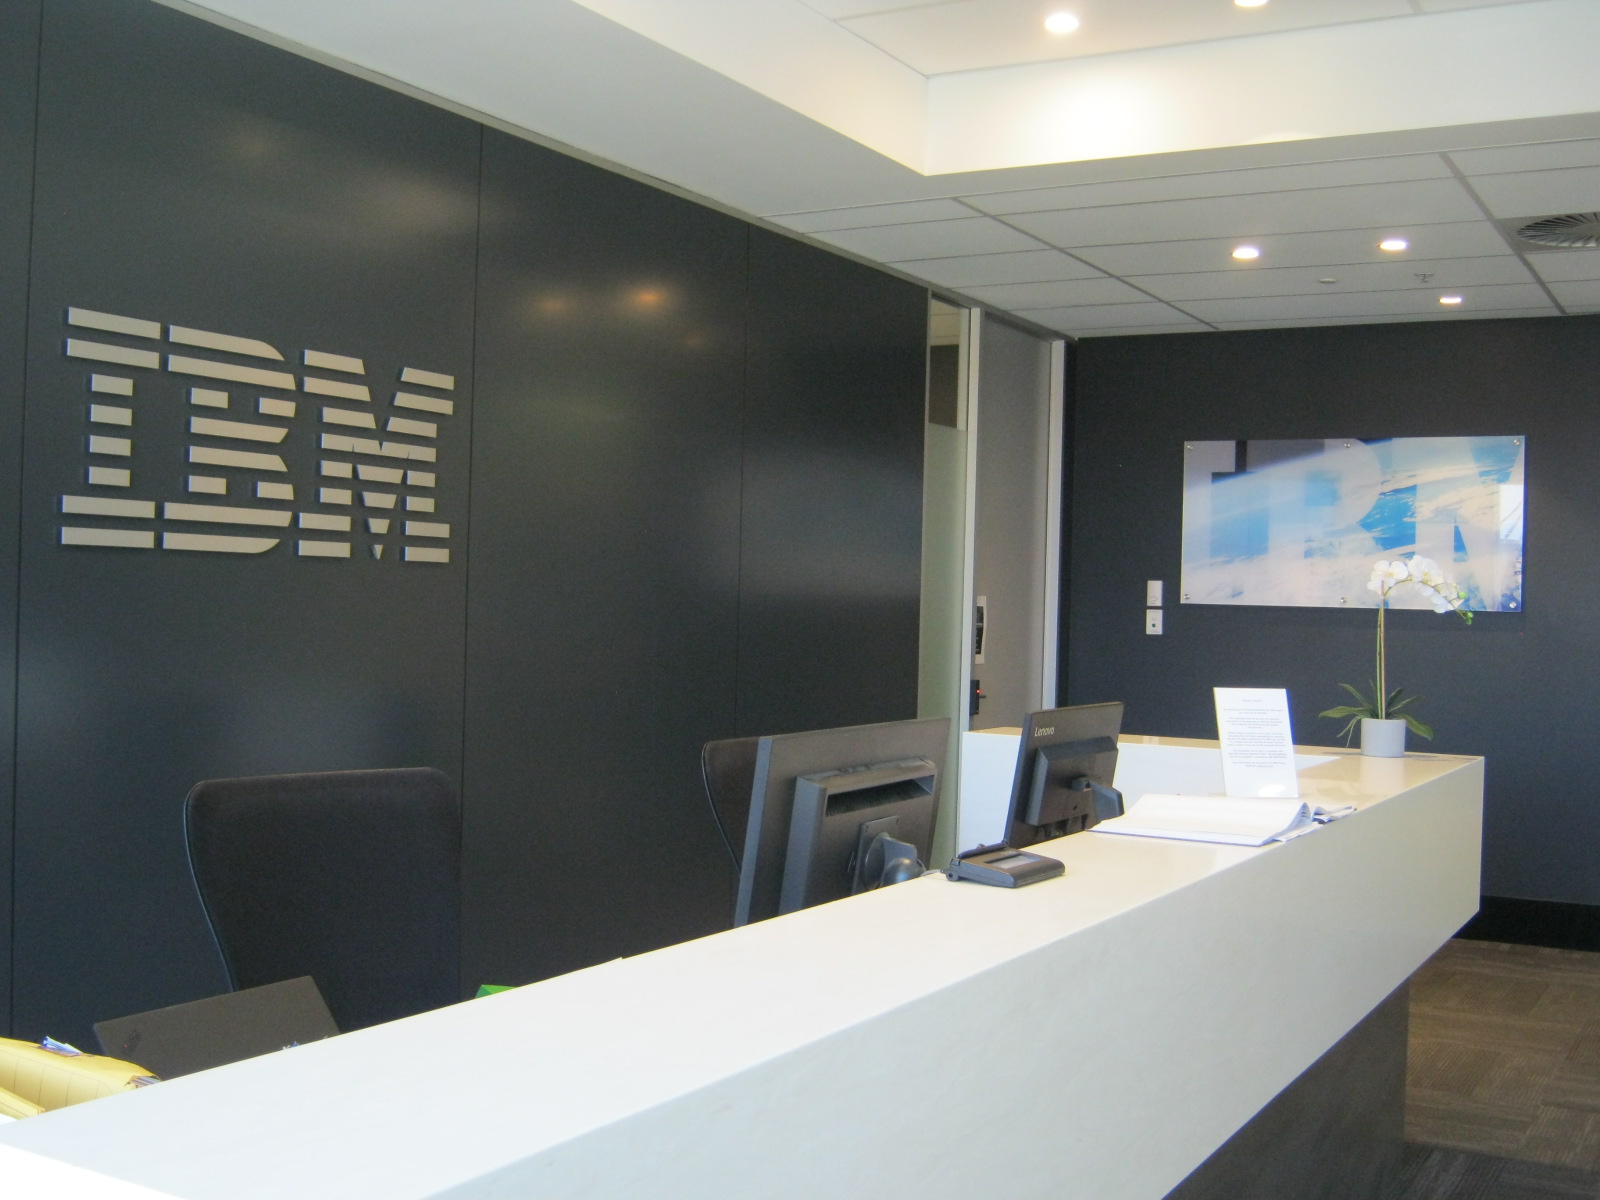 Images IBM Australia